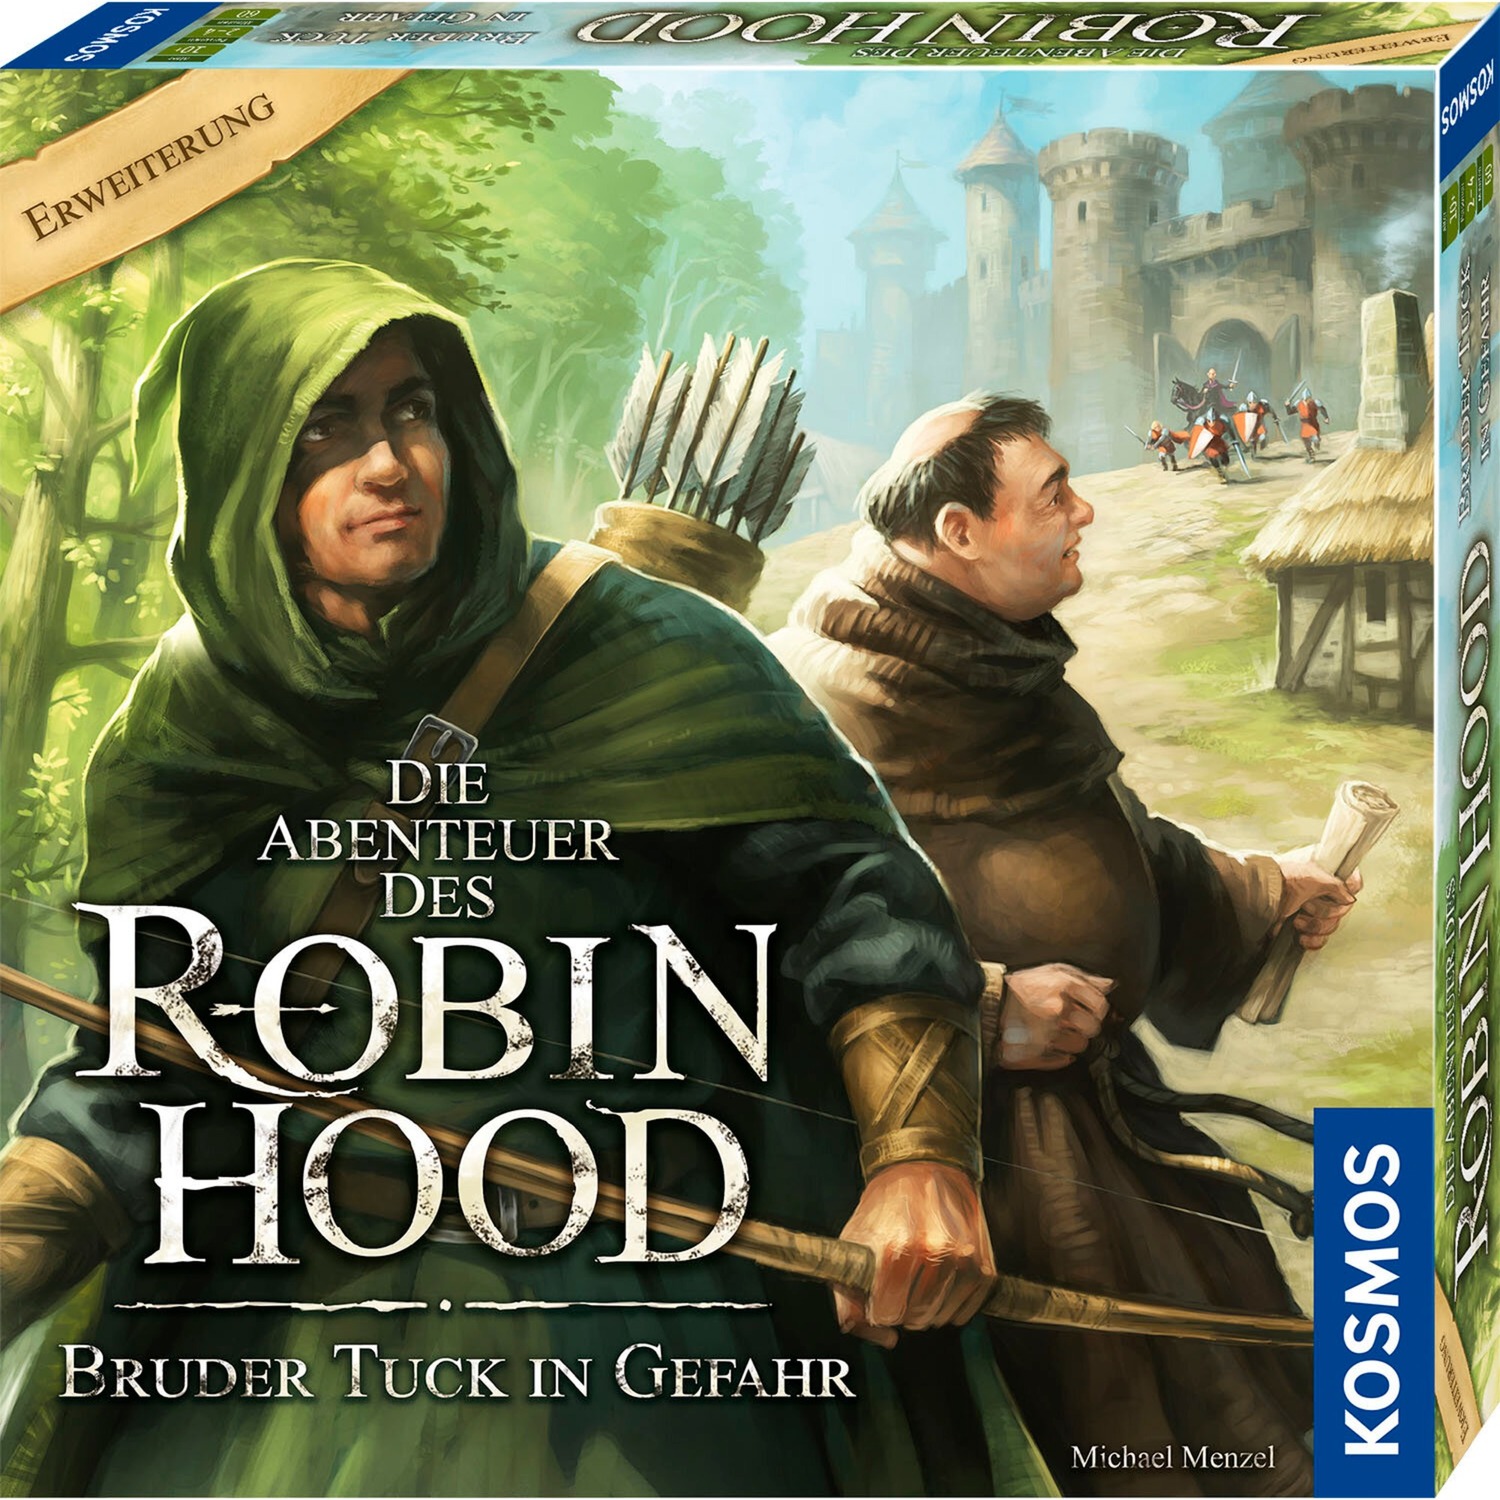 Die Abenteuer des Robin Hood - Bruder Tuck in Gefahr, Brettspiel von Kosmos